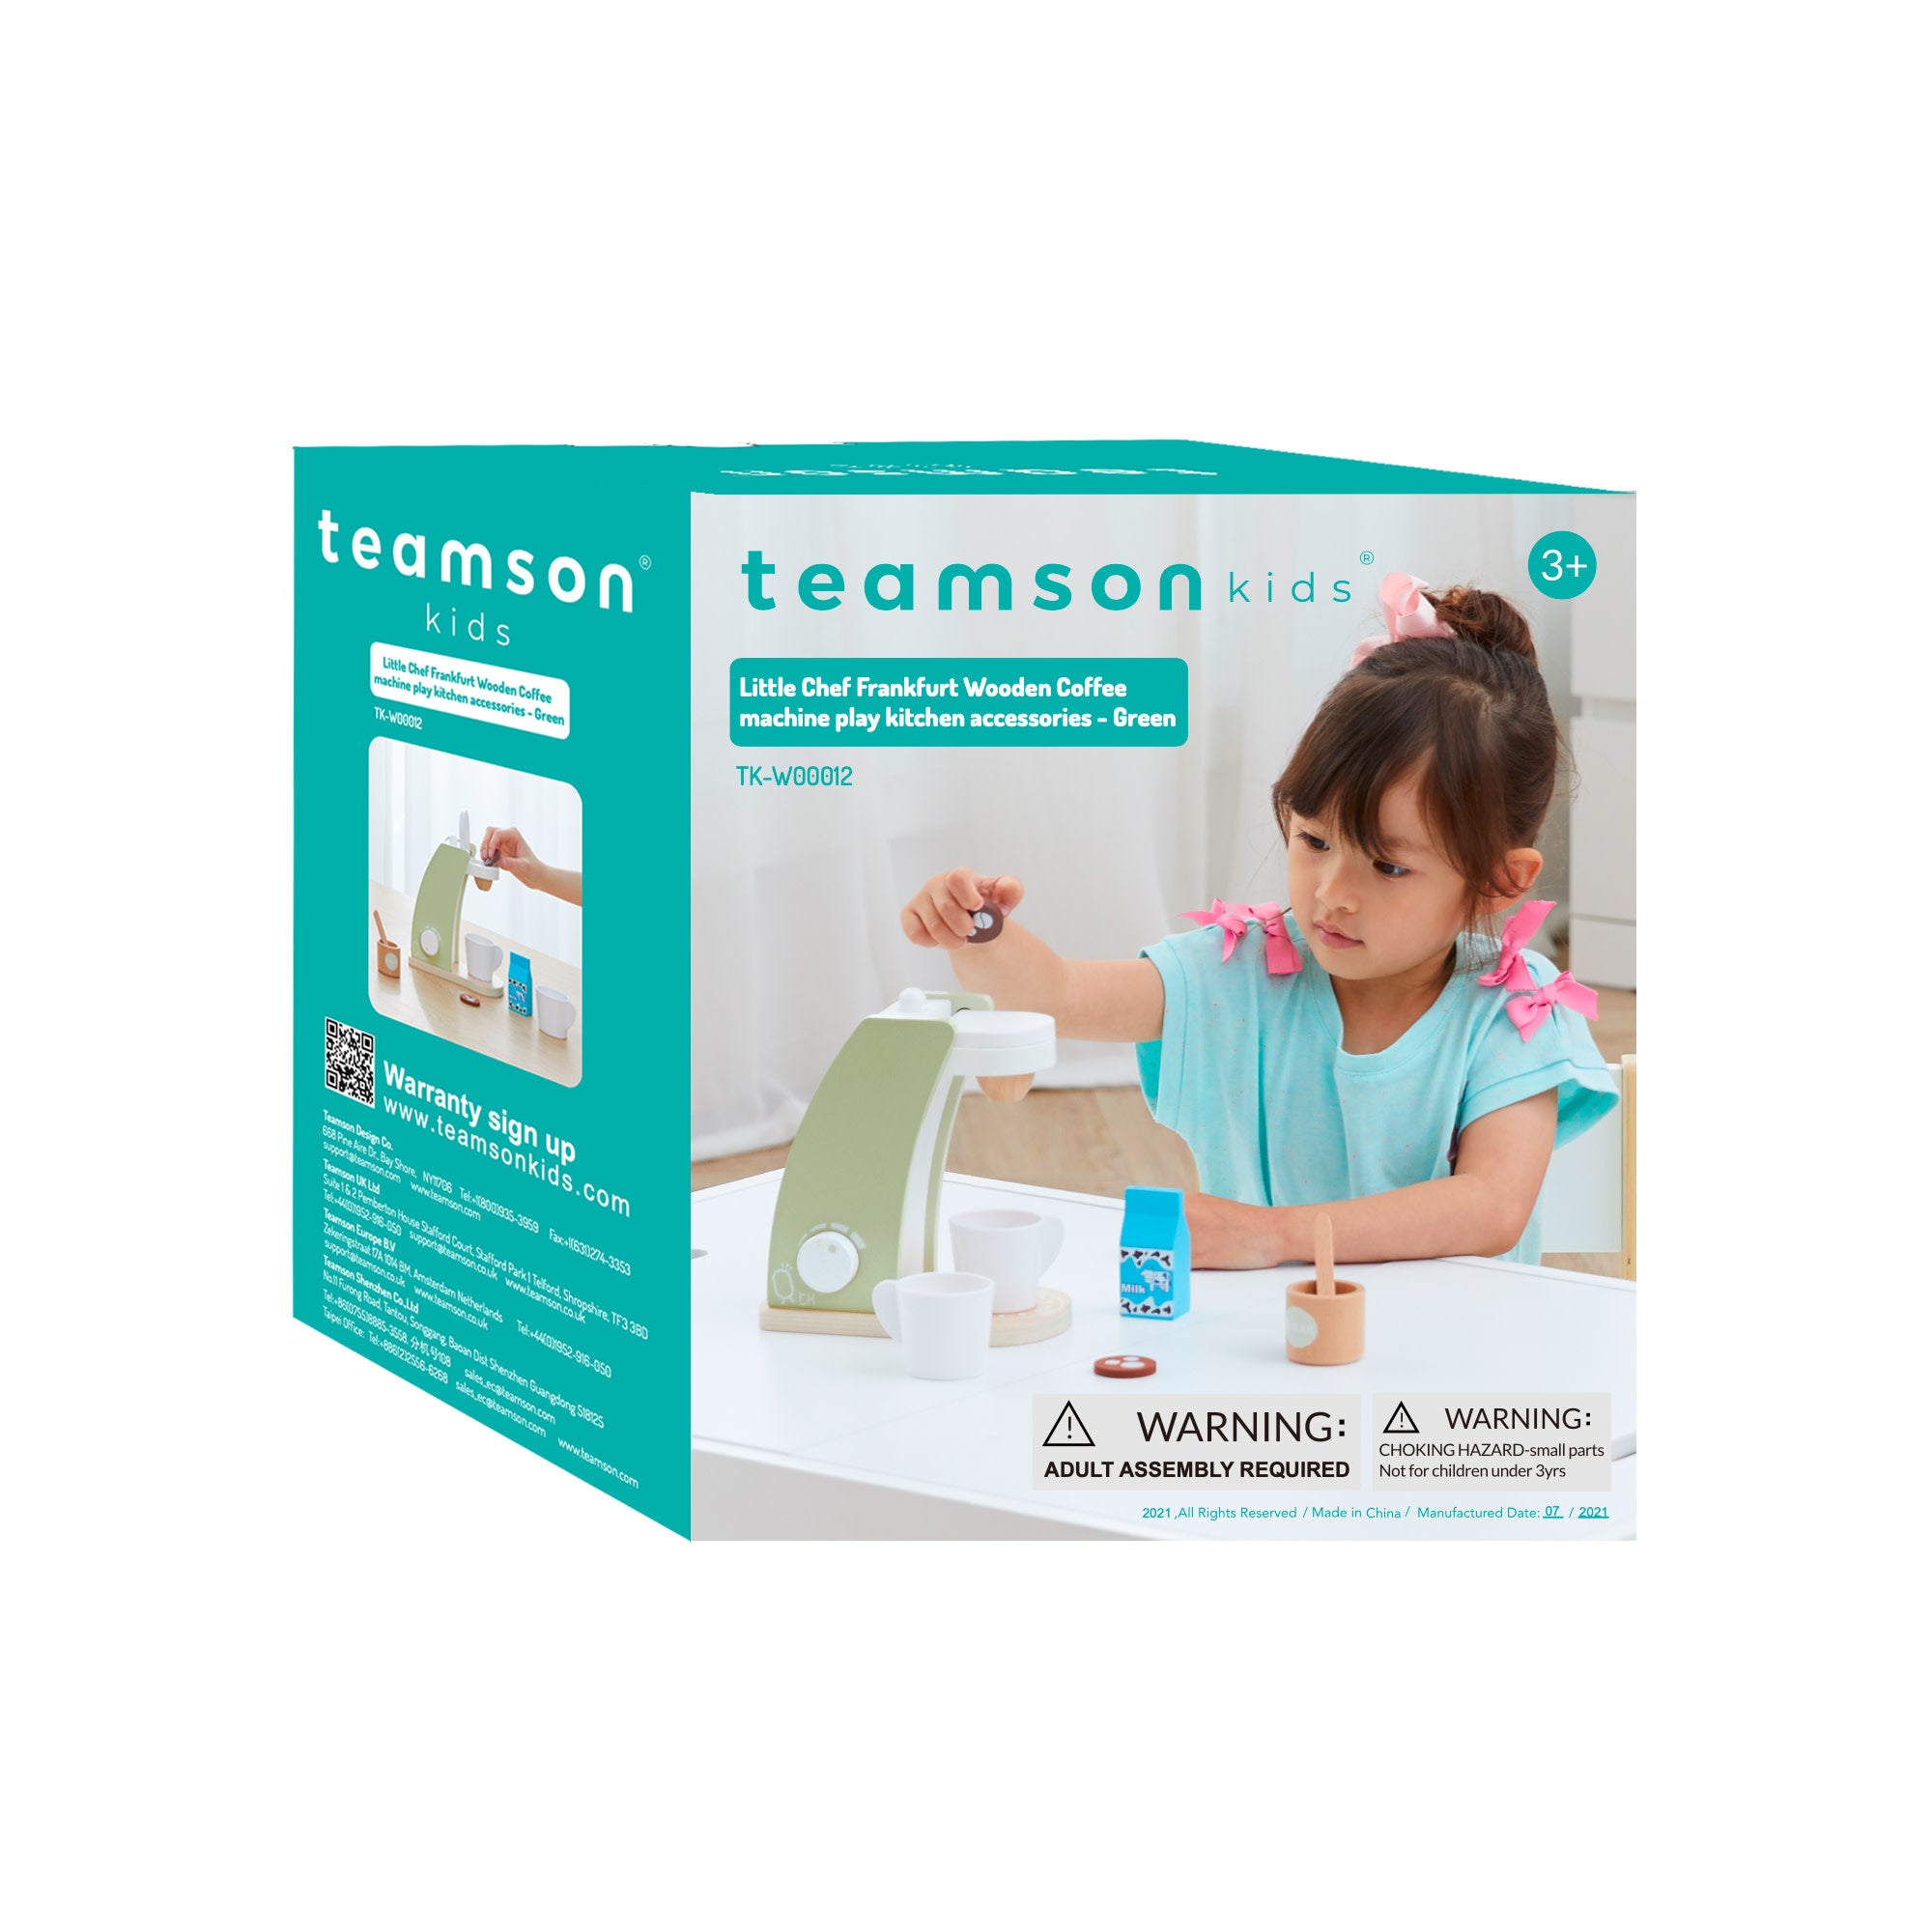 Teamson kids Blender Accessories Kitchen Toy Green